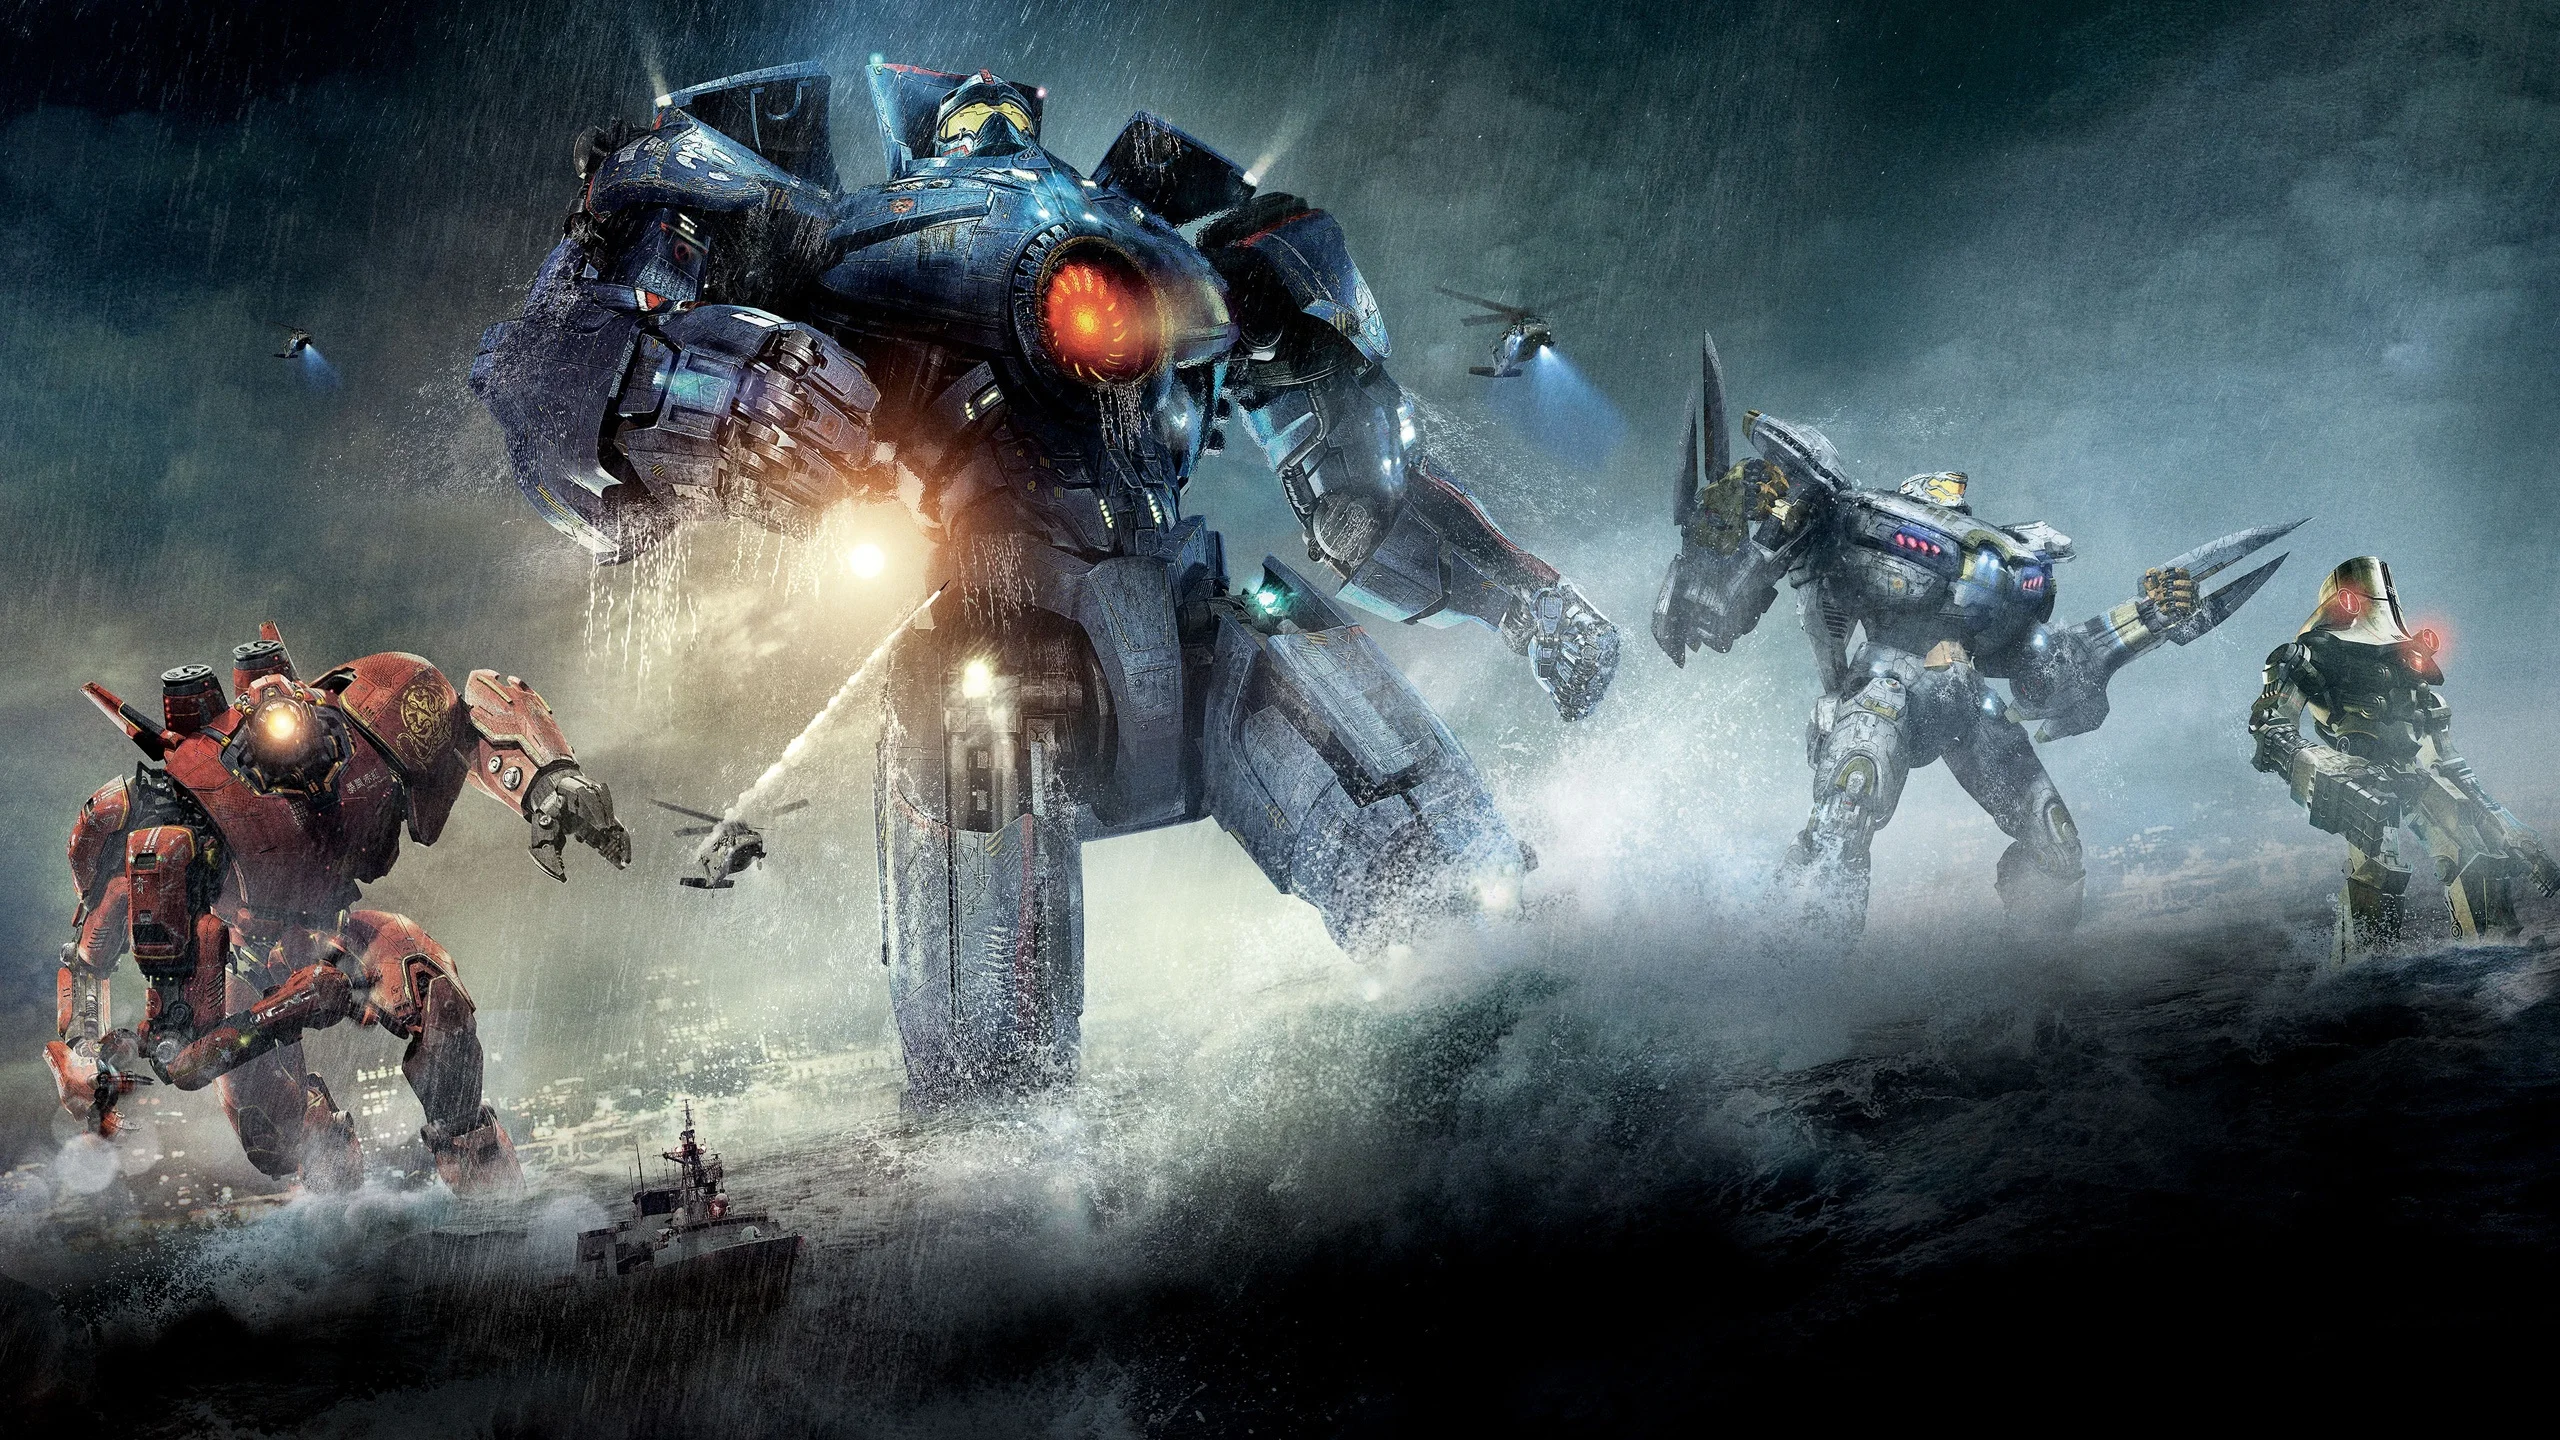 Премьера фильма «Тихоокеанский рубеж 2» состоялась 22 марта 2018 года. Это кино, где гигантские роботы егеря вновь сражаются с не менее гигантскими монстрами кайдзю. Поставил киноленту Стивен С. ДеНайт, создатель сериалов «Спартак» и «Сорвиголова». А вот за первую часть, вышедшую в 2013-м, отвечал небезызвестный Гильермо дель Торо, недавно получивший «Оскар» за «Форму воды». Впрочем, суть картины от этого мало меняется — уже тогда это был красивый, но совершенно незамысловатый фильм.